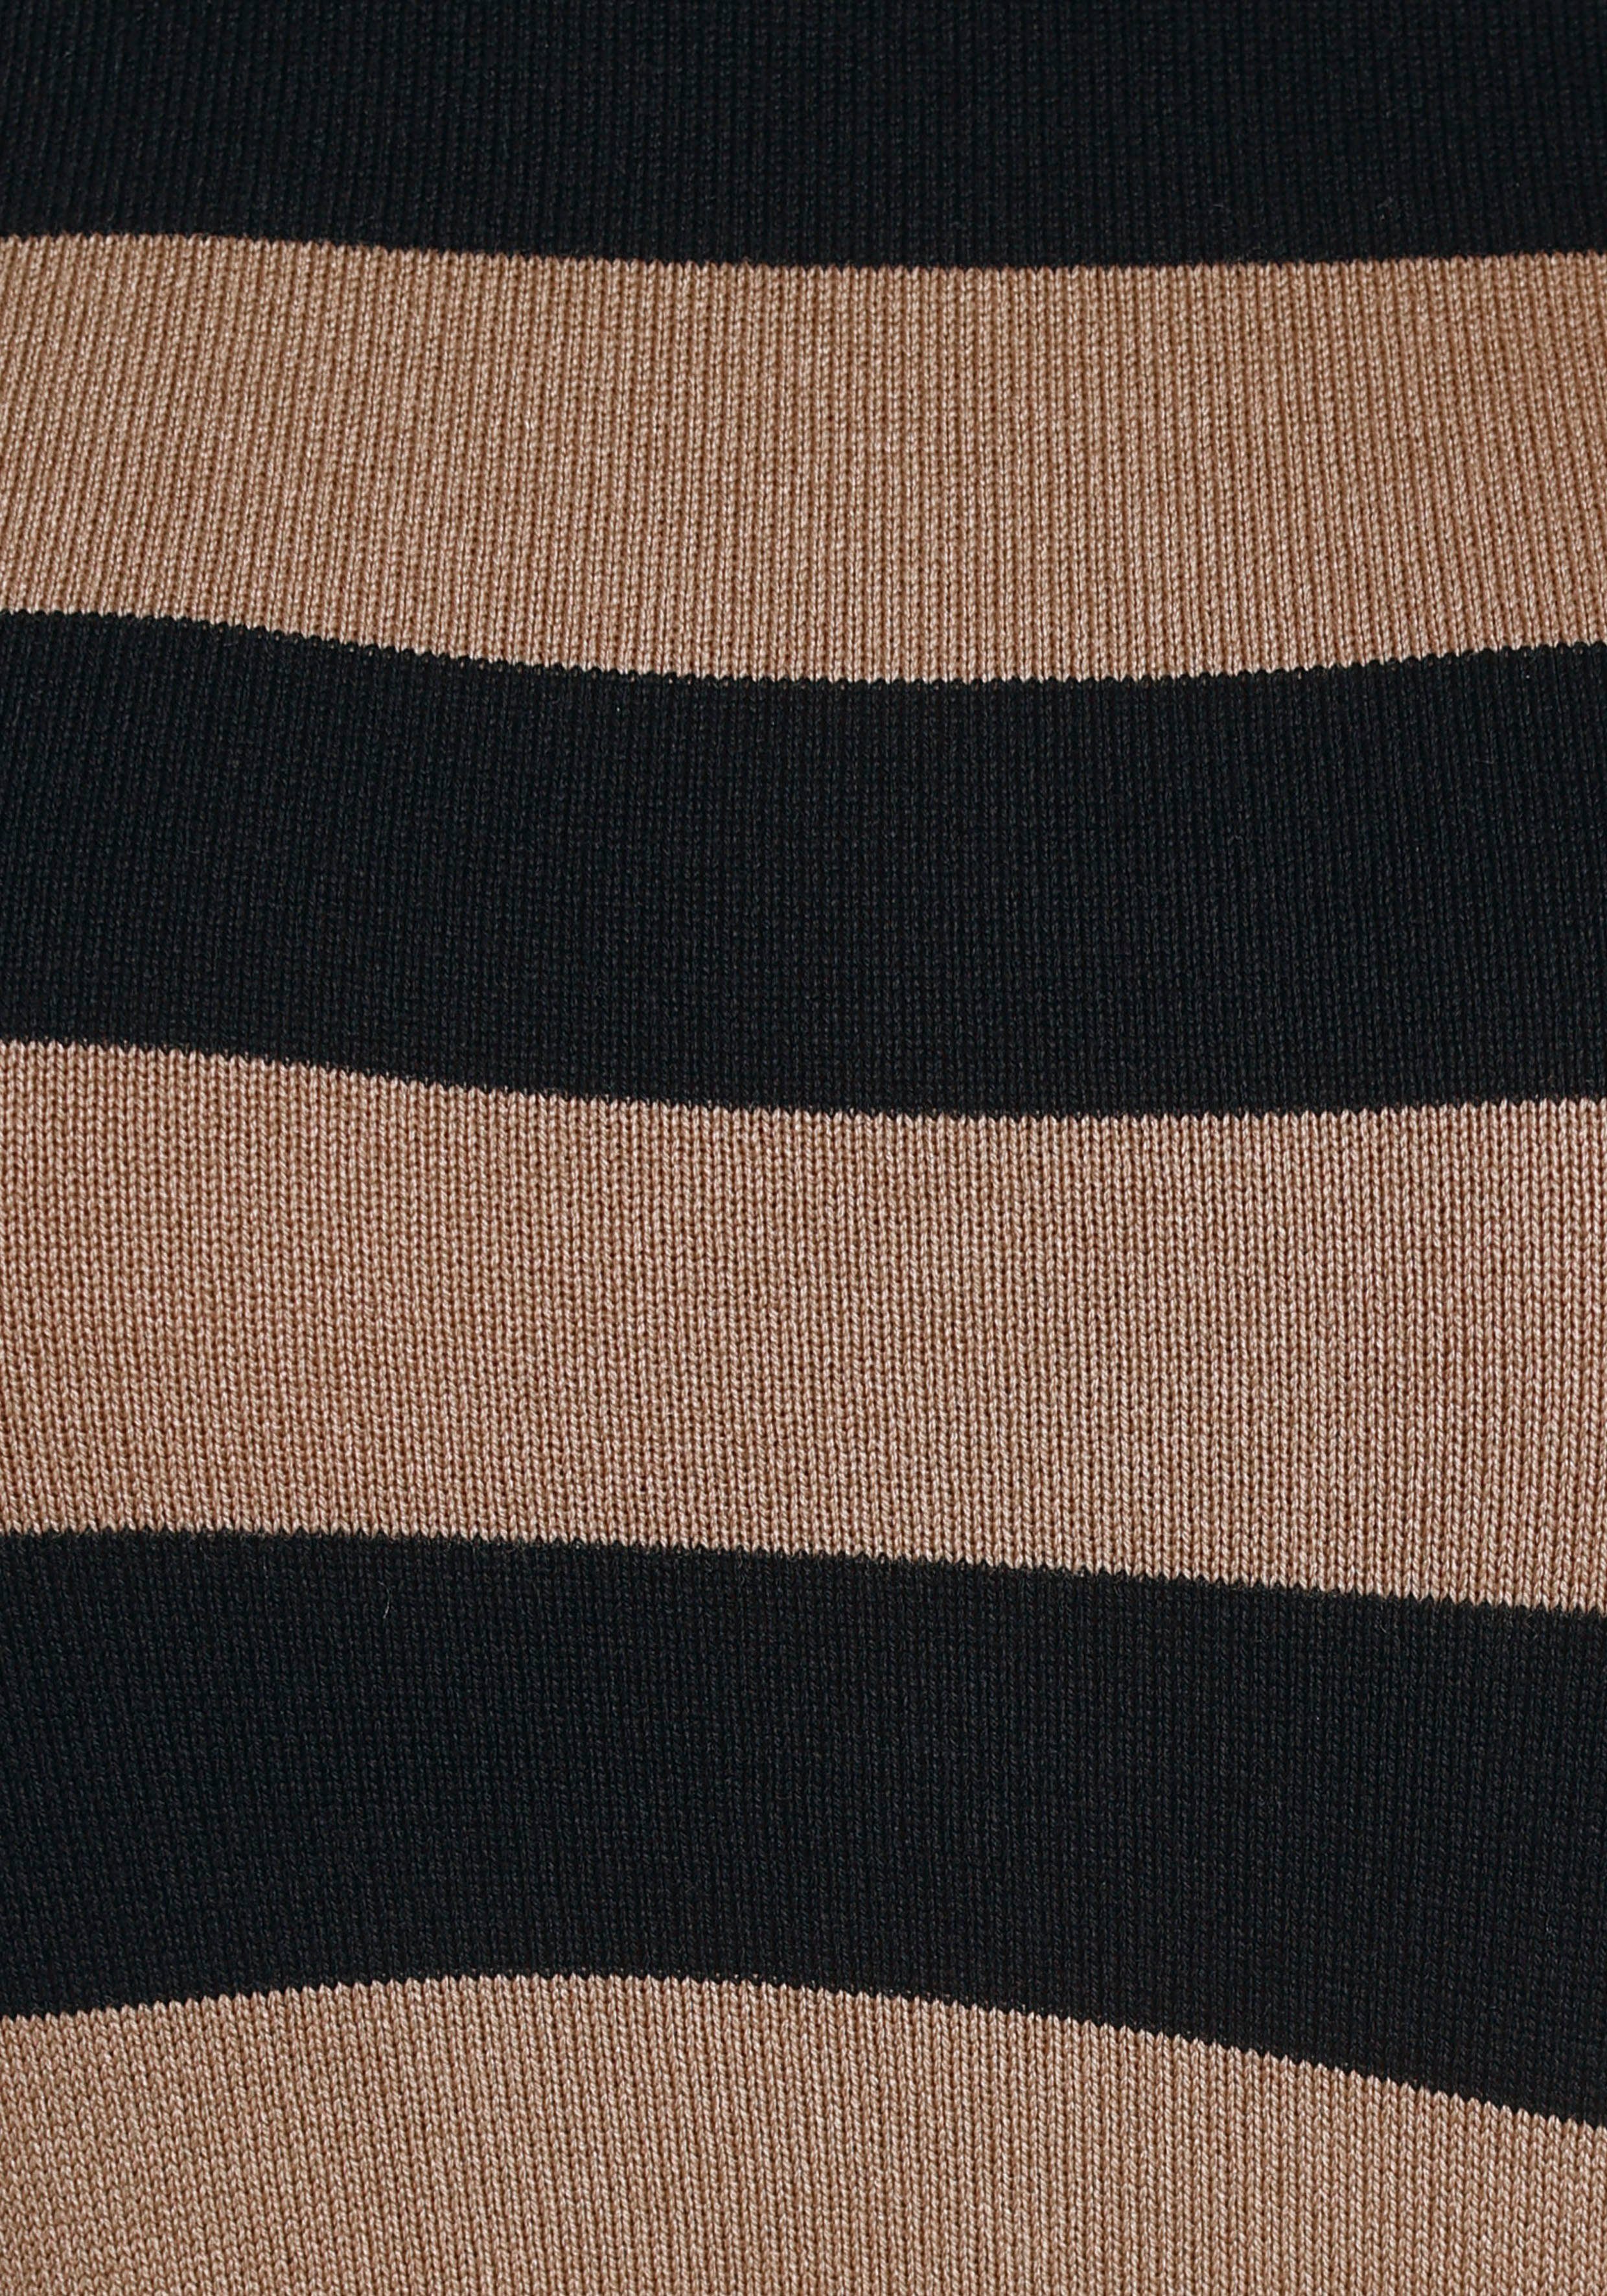 Tamaris im Streifendesign schwarz-camelfarben-gestreift Rollkragenpullover